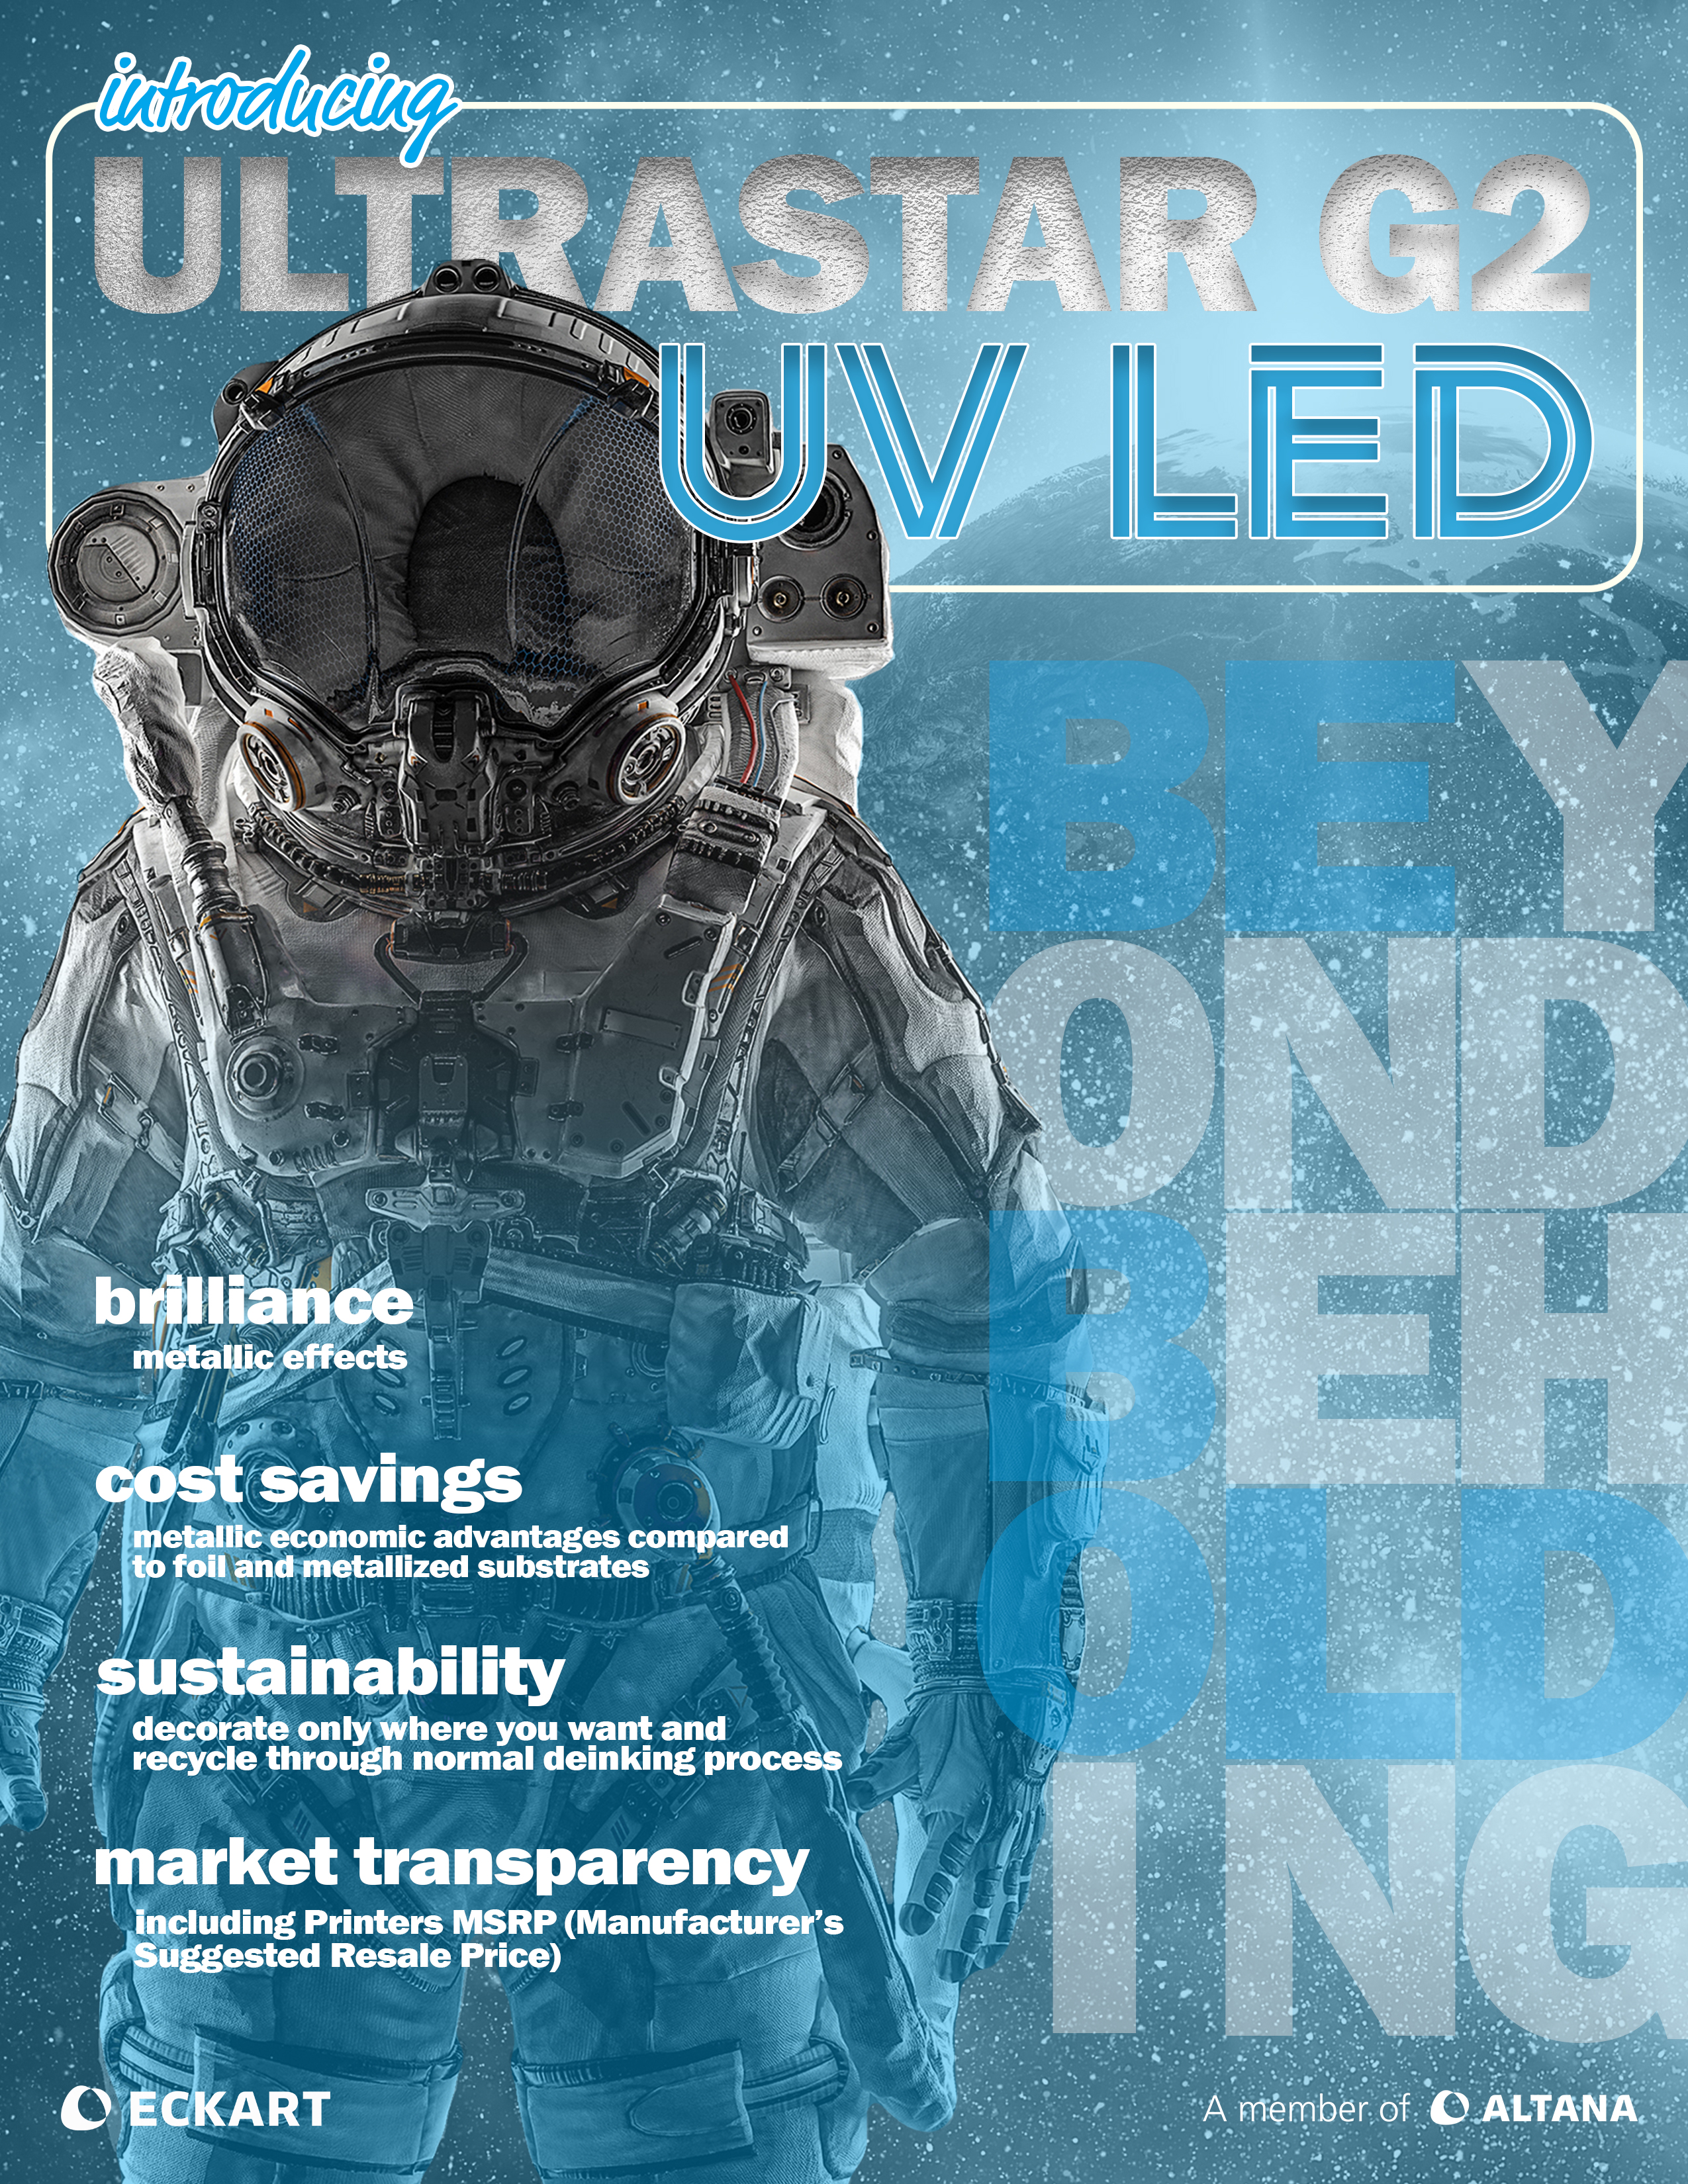 ULTRASTAR G2 UV LED Brochure Cover 1